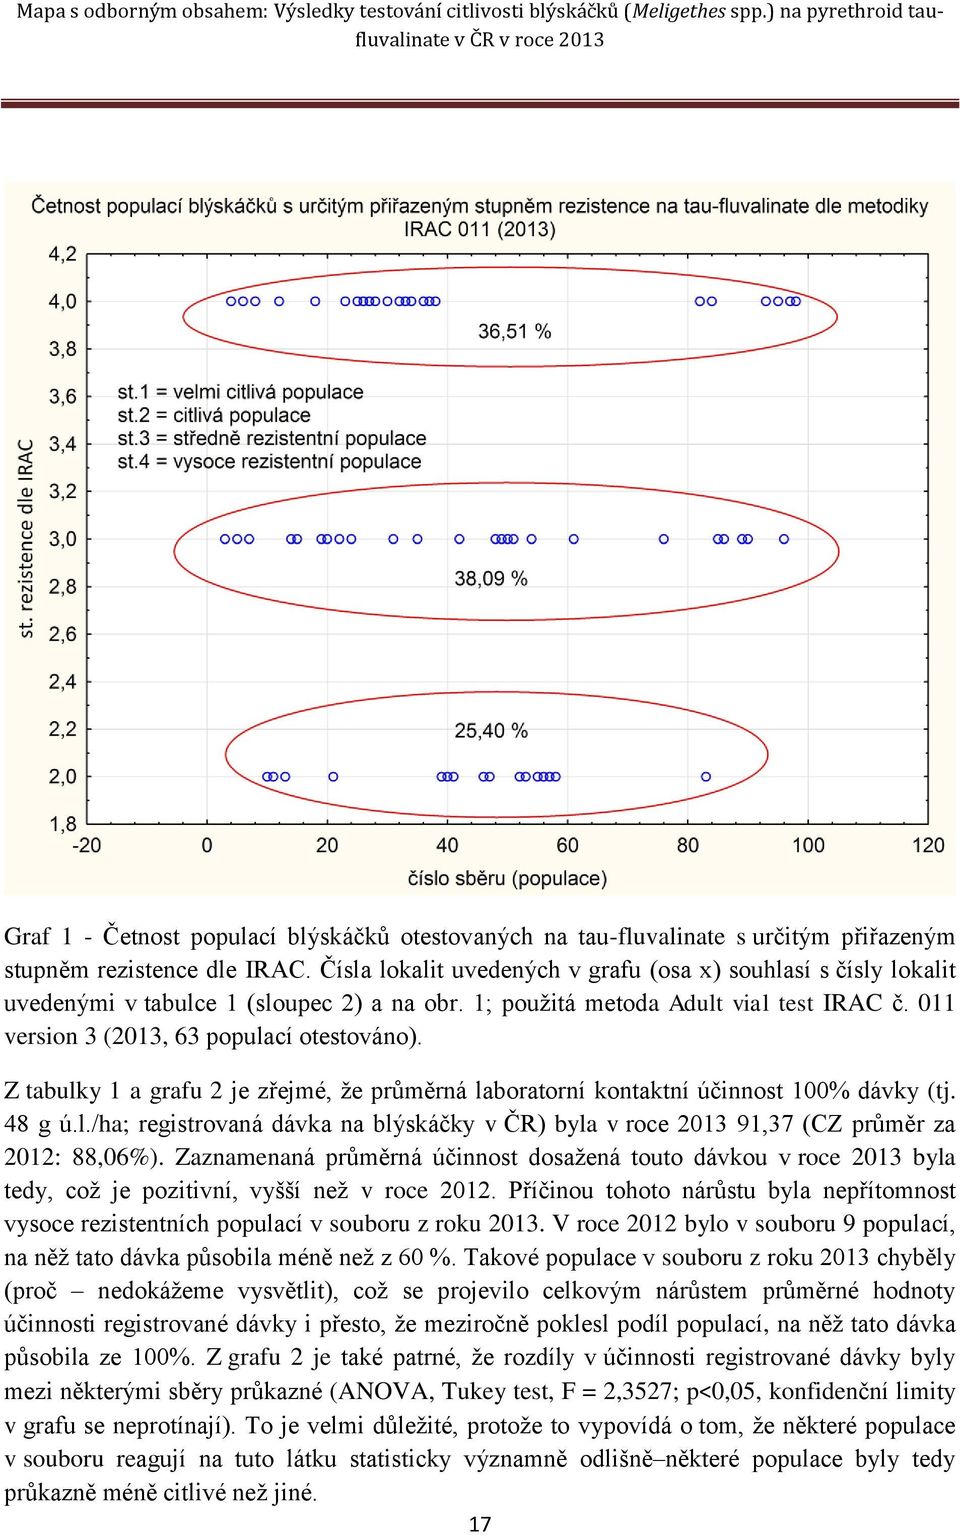 Z tabulky 1 a grafu 2 je zřejmé, že průměrná laboratorní kontaktní účinnost 100% dávky (tj. 48 g ú.l./ha; registrovaná dávka na blýskáčky v ČR) byla v roce 2013 91,37 (CZ průměr za 2012: 88,06%).